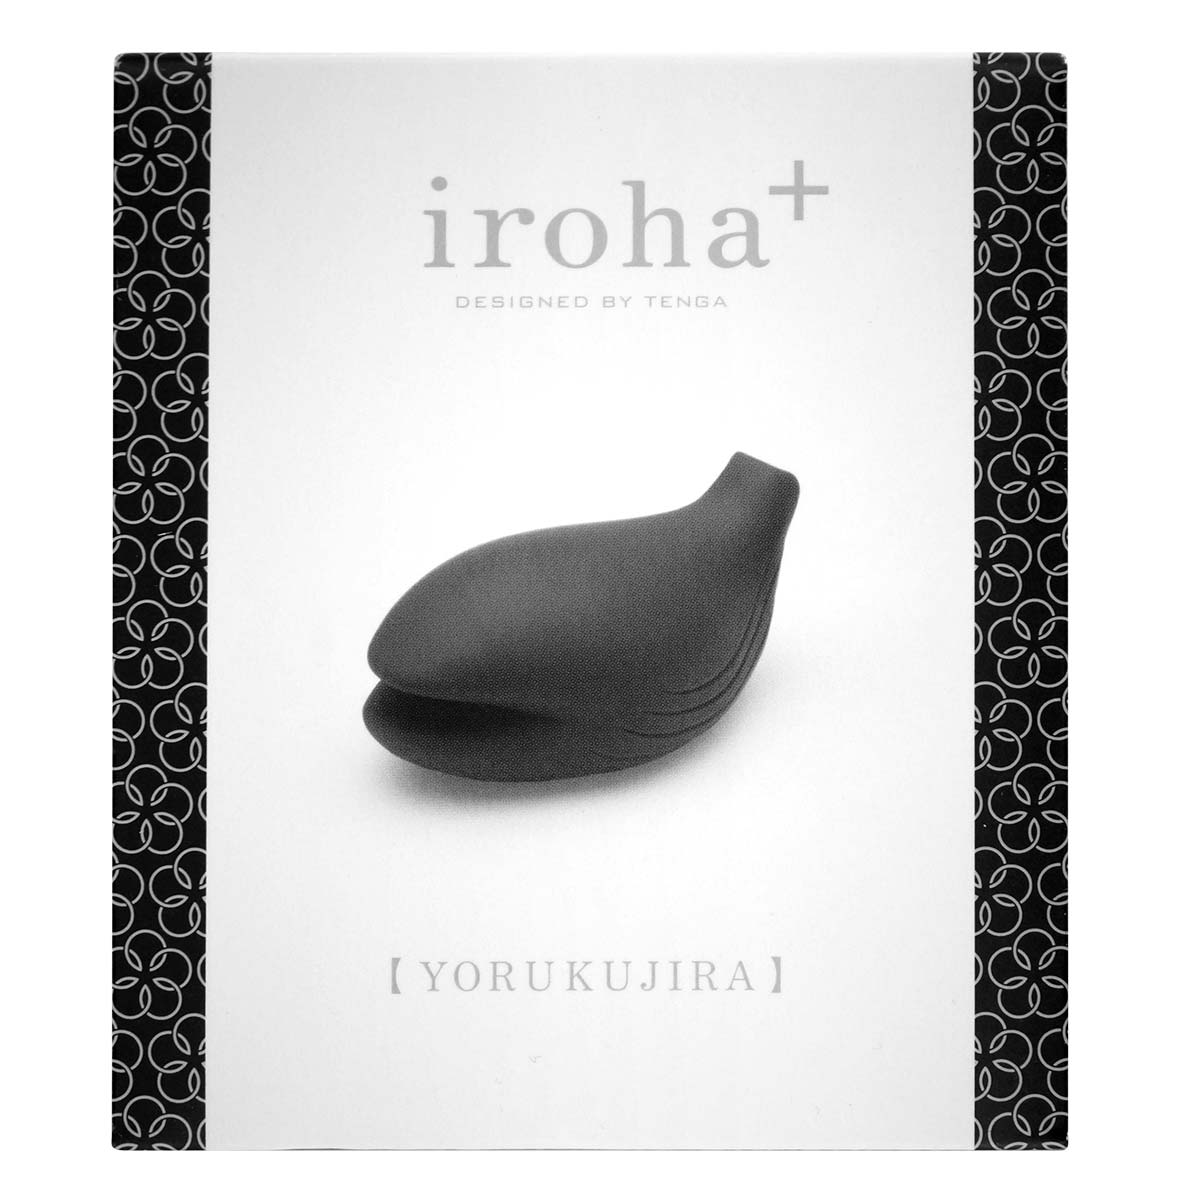 iroha+ YORUKUJIRA-thumb_2